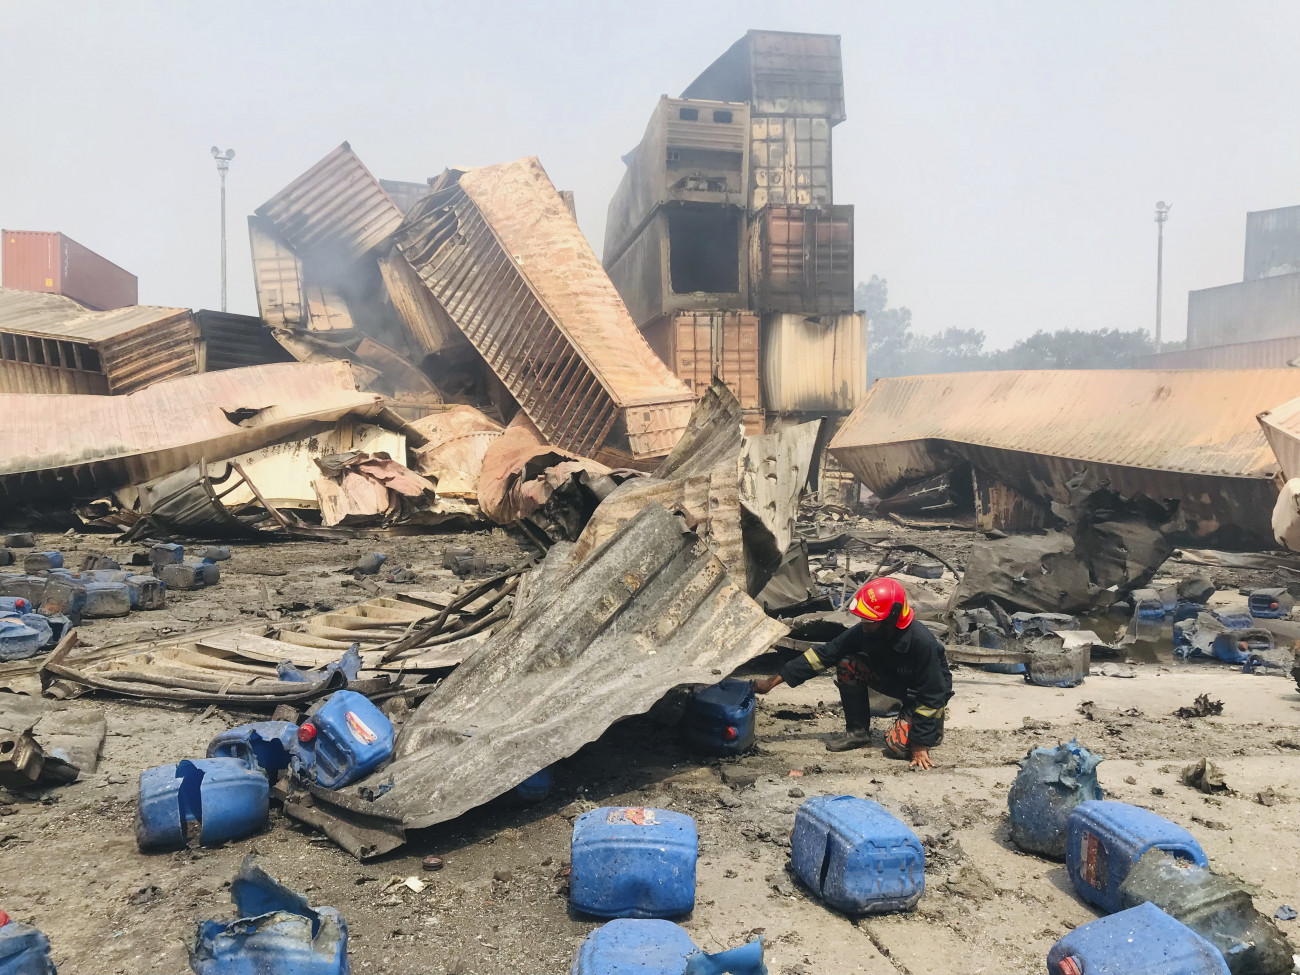 Szitakunda, 2022. június 7.
Tűzoltó a délkelet-bangladesi Csittagong kikötővárostól negyven kilométerre fekvő Szitakundában történt raktártűz helyszínén 2022. június 7-én. A hidrogén-peroxidot tároló raktárban június 4-én este keletkezett tűzben és az általa kiváltott robbanásban legalább 49 ember életét vesztette, mintegy háromszáz megsérült.
MTI/AP